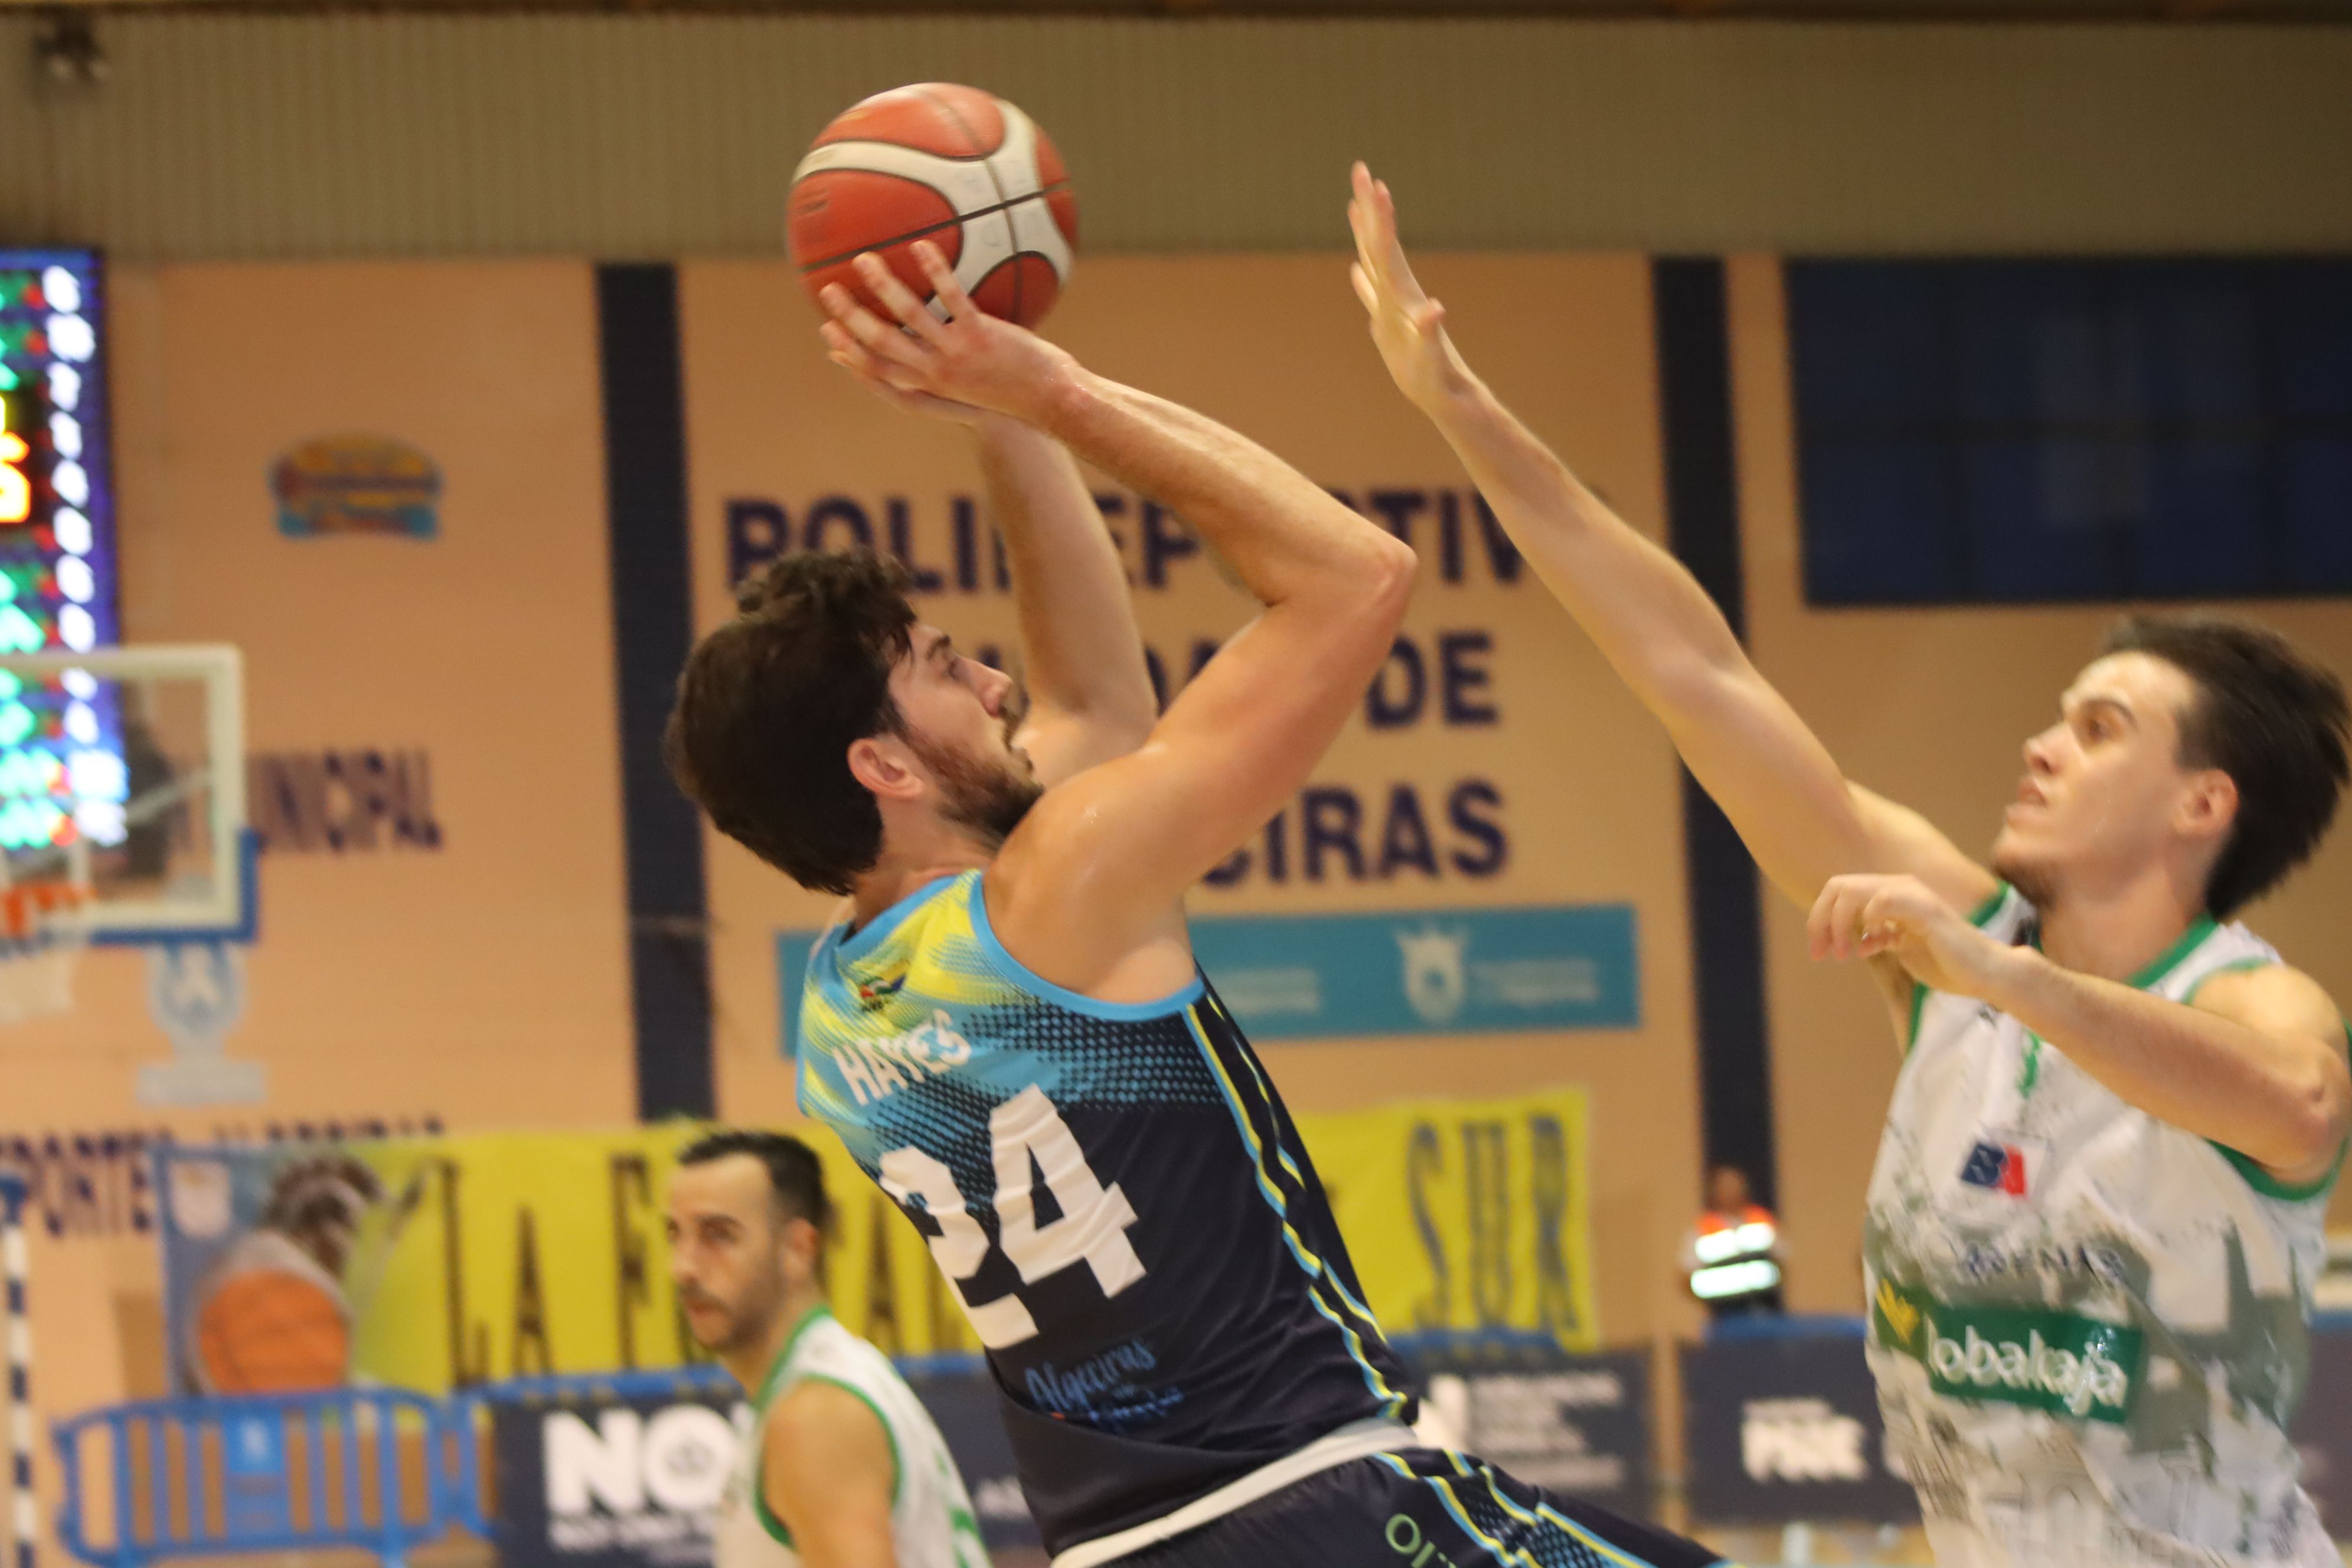 El jugador de Damex UDEA, Hayes, intenta el lanzamiento a canasta ante la oposición de un jugador del Albacete Basket/Foto: Axel S.C.